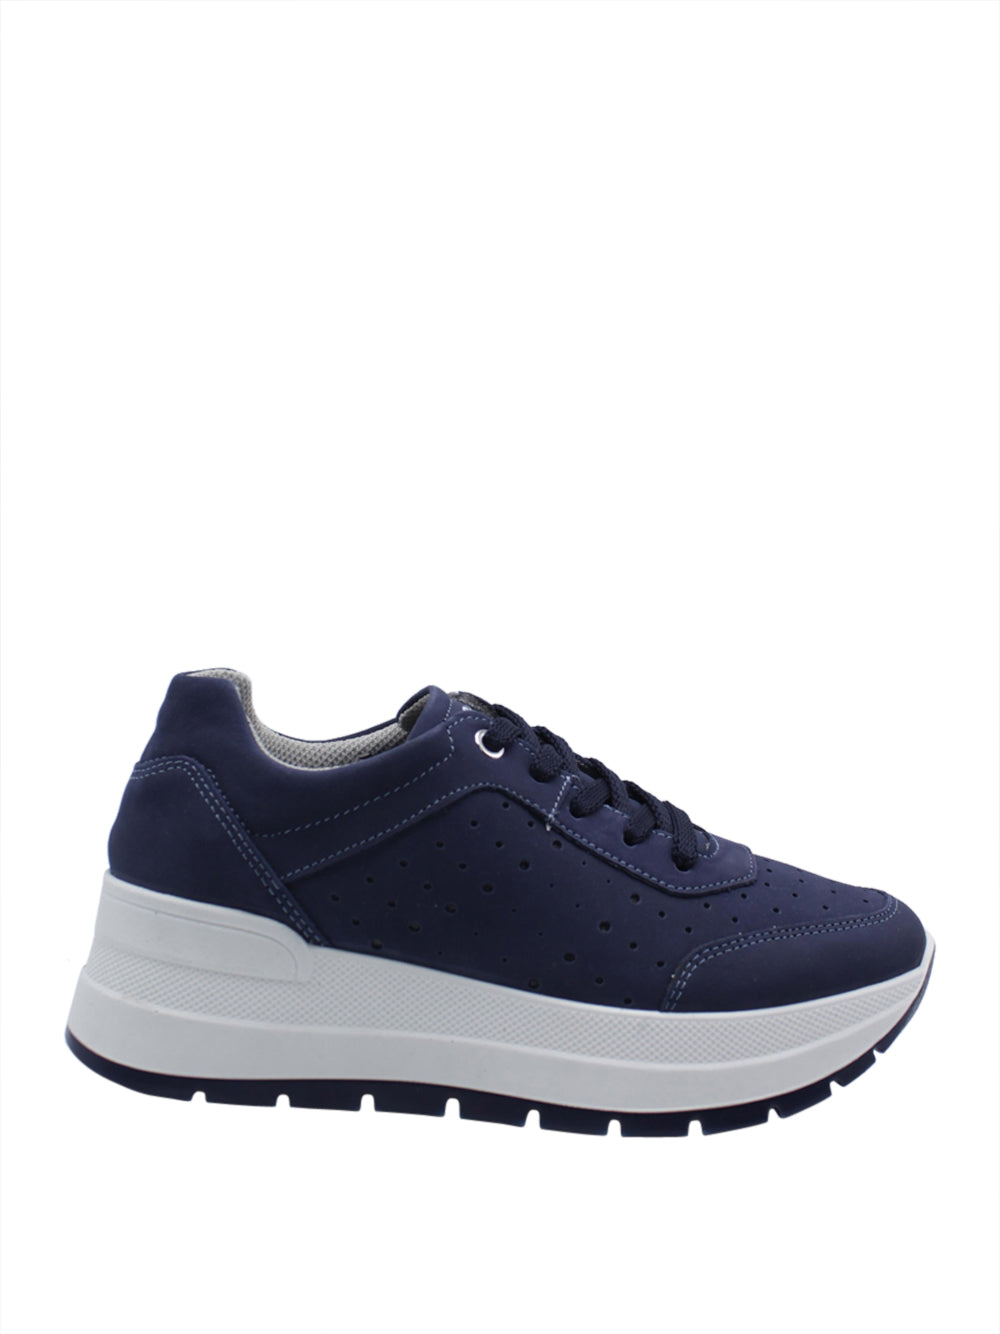 IGI&CO Sneakers Donna - Blu modello 5663400